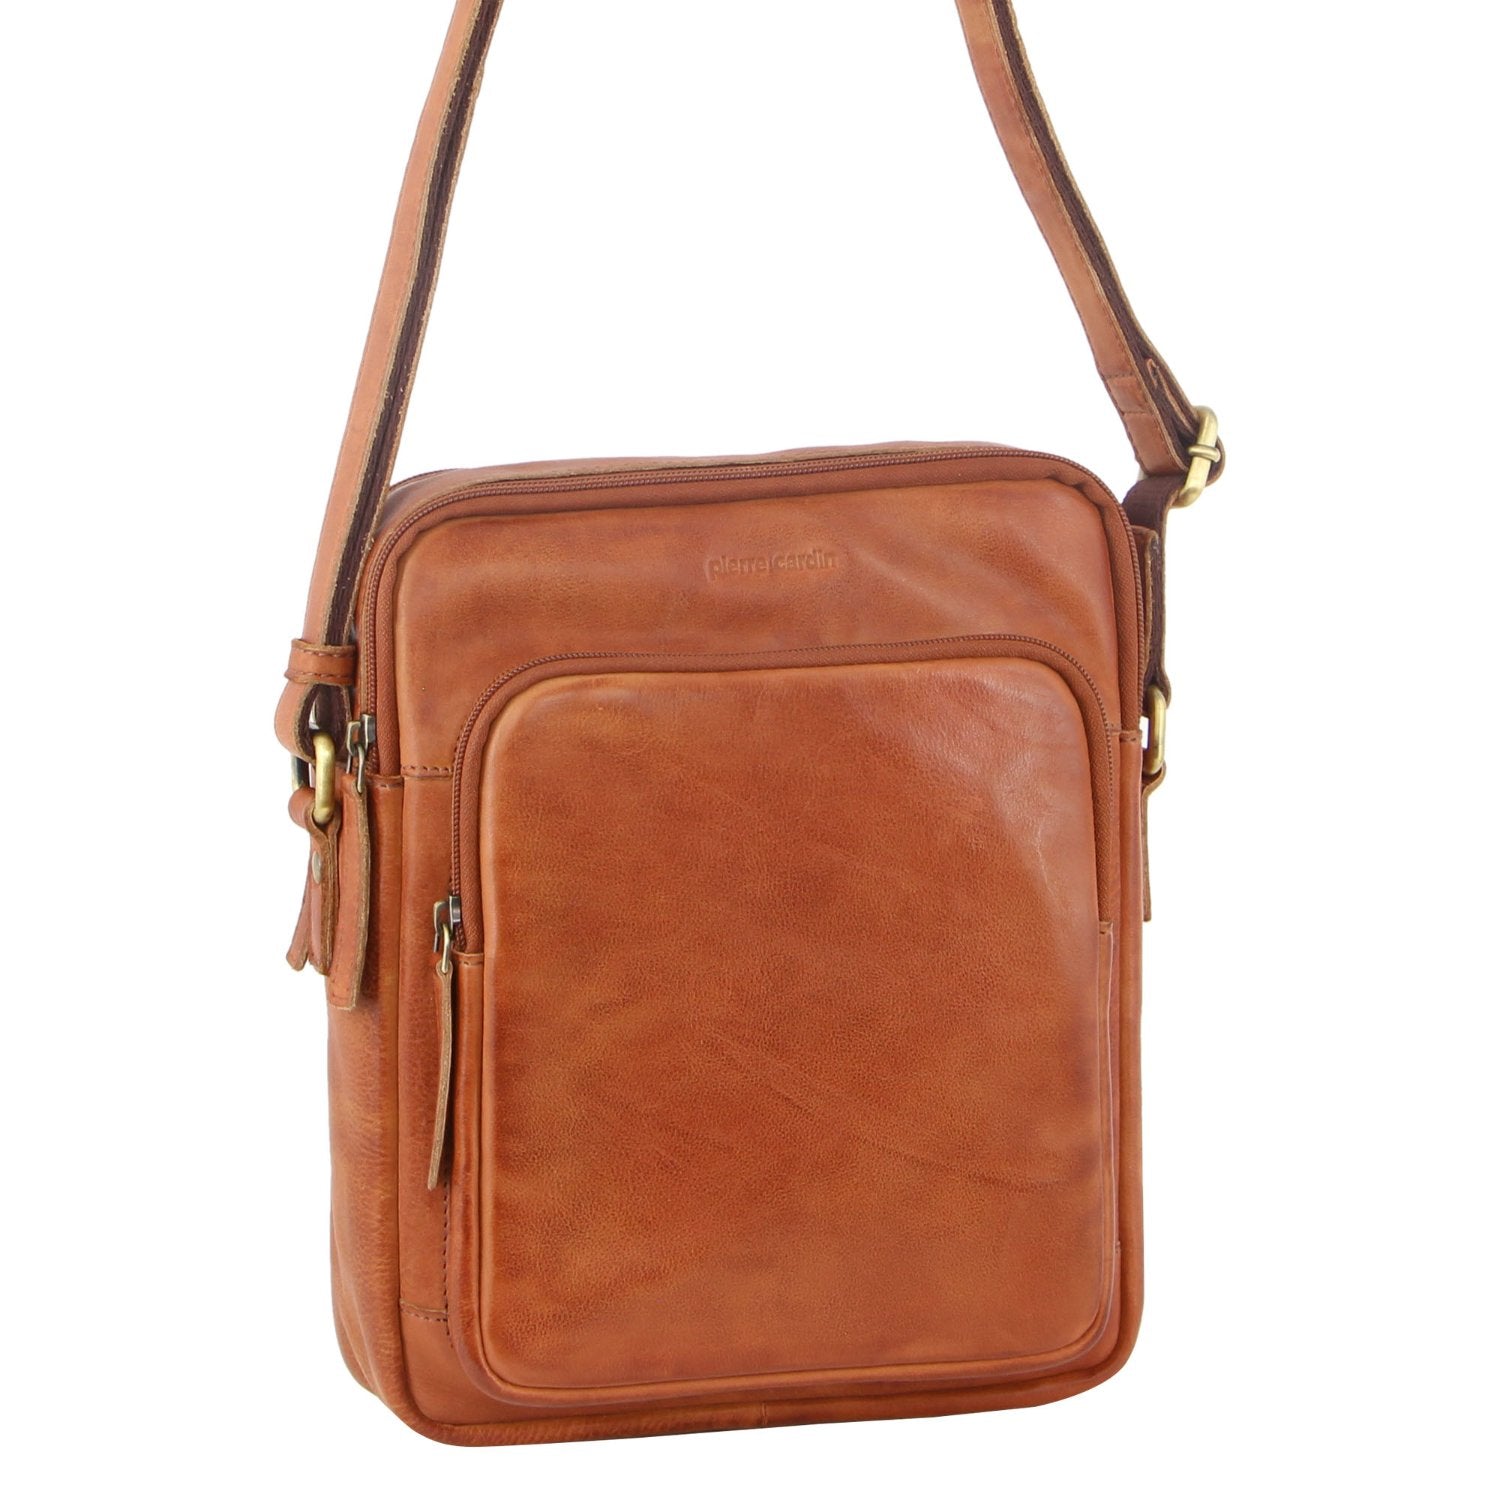 Pierre Cardin Leather Unisex Cross-Body Bag in Cognac